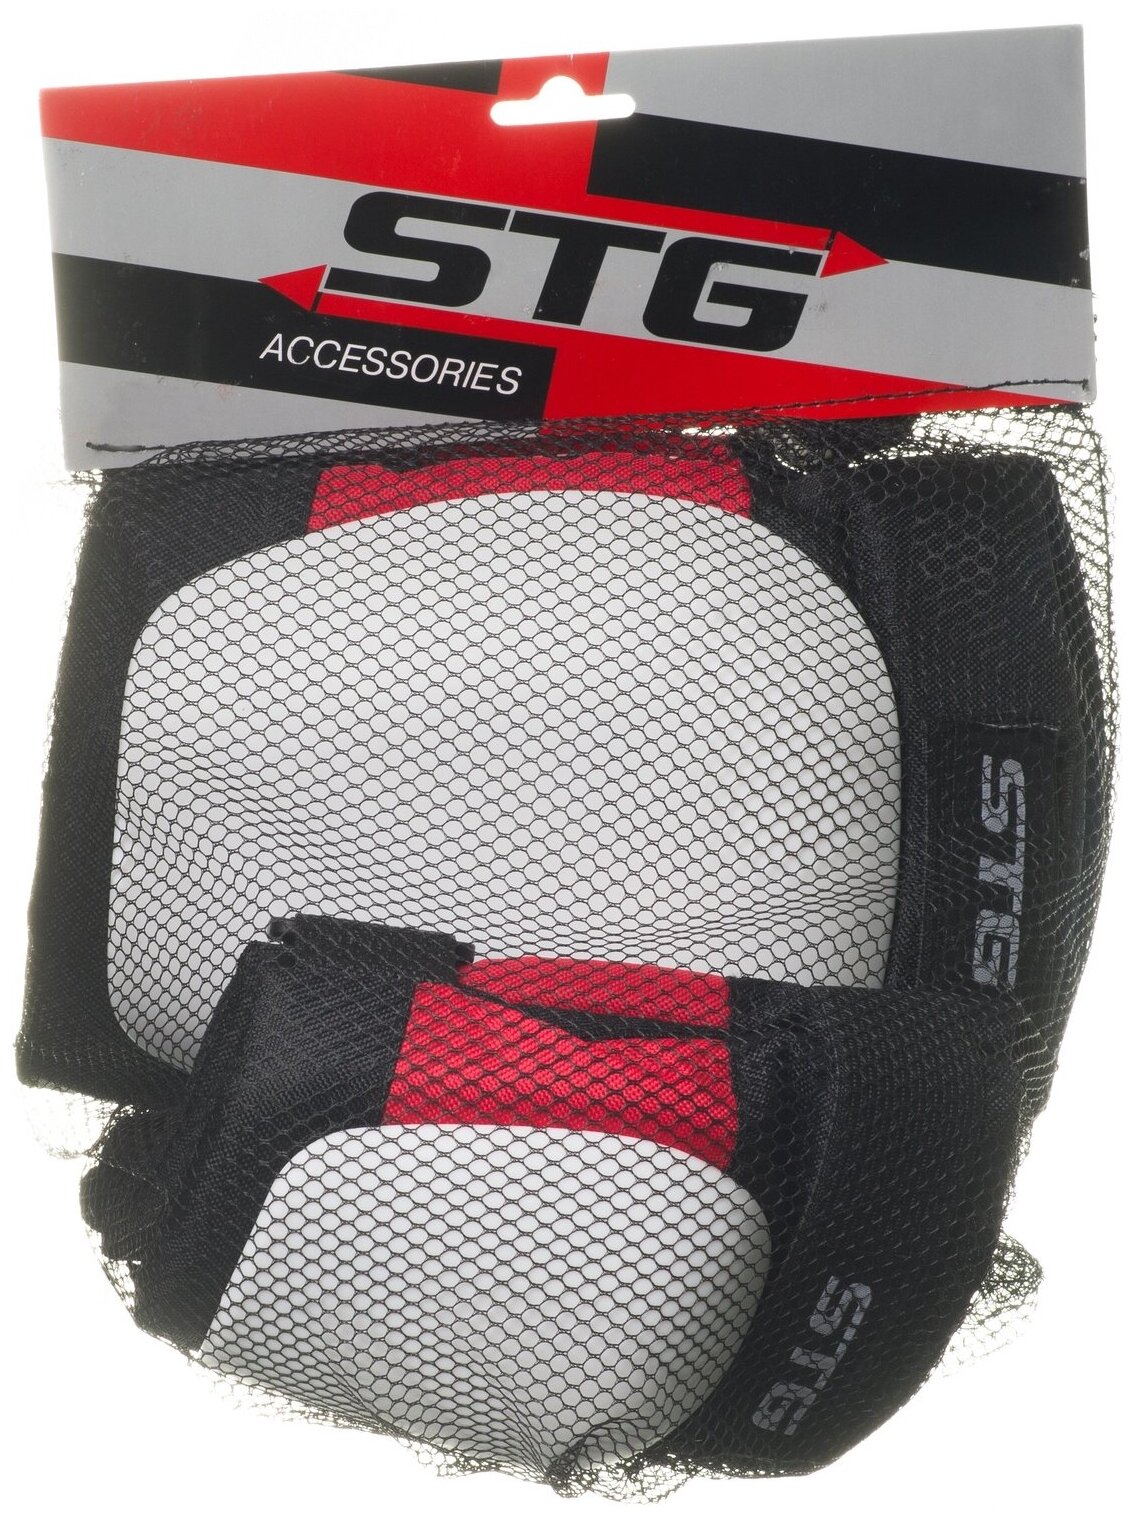 Защита на колени STG YX-0339 (Защита на колени STG YX-0339 размер S)